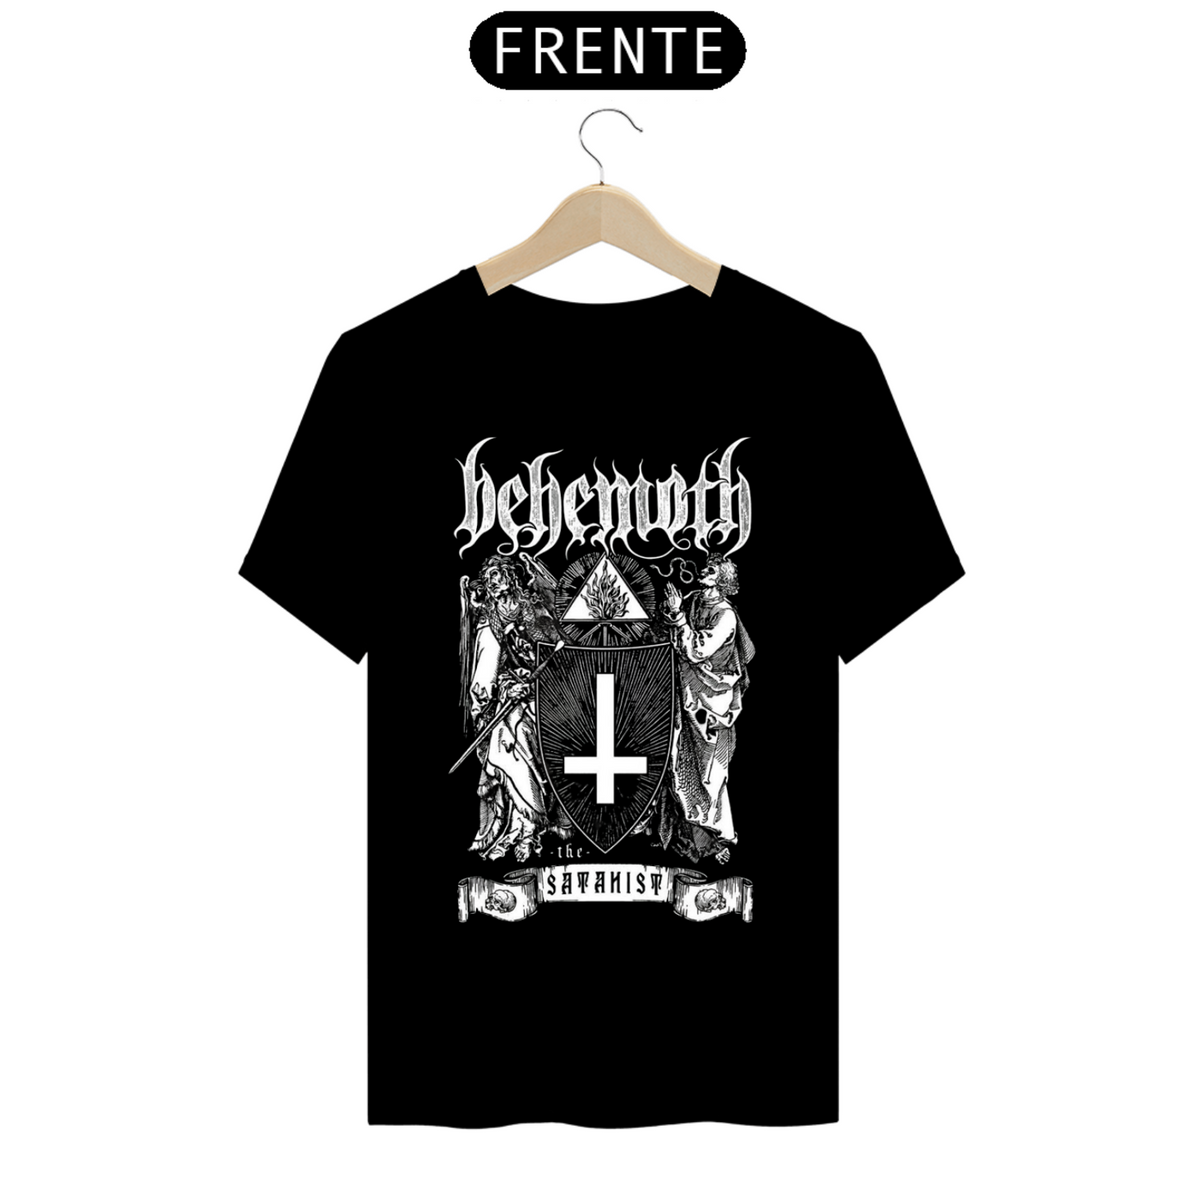 Nome do produto: Camisa Behemoth